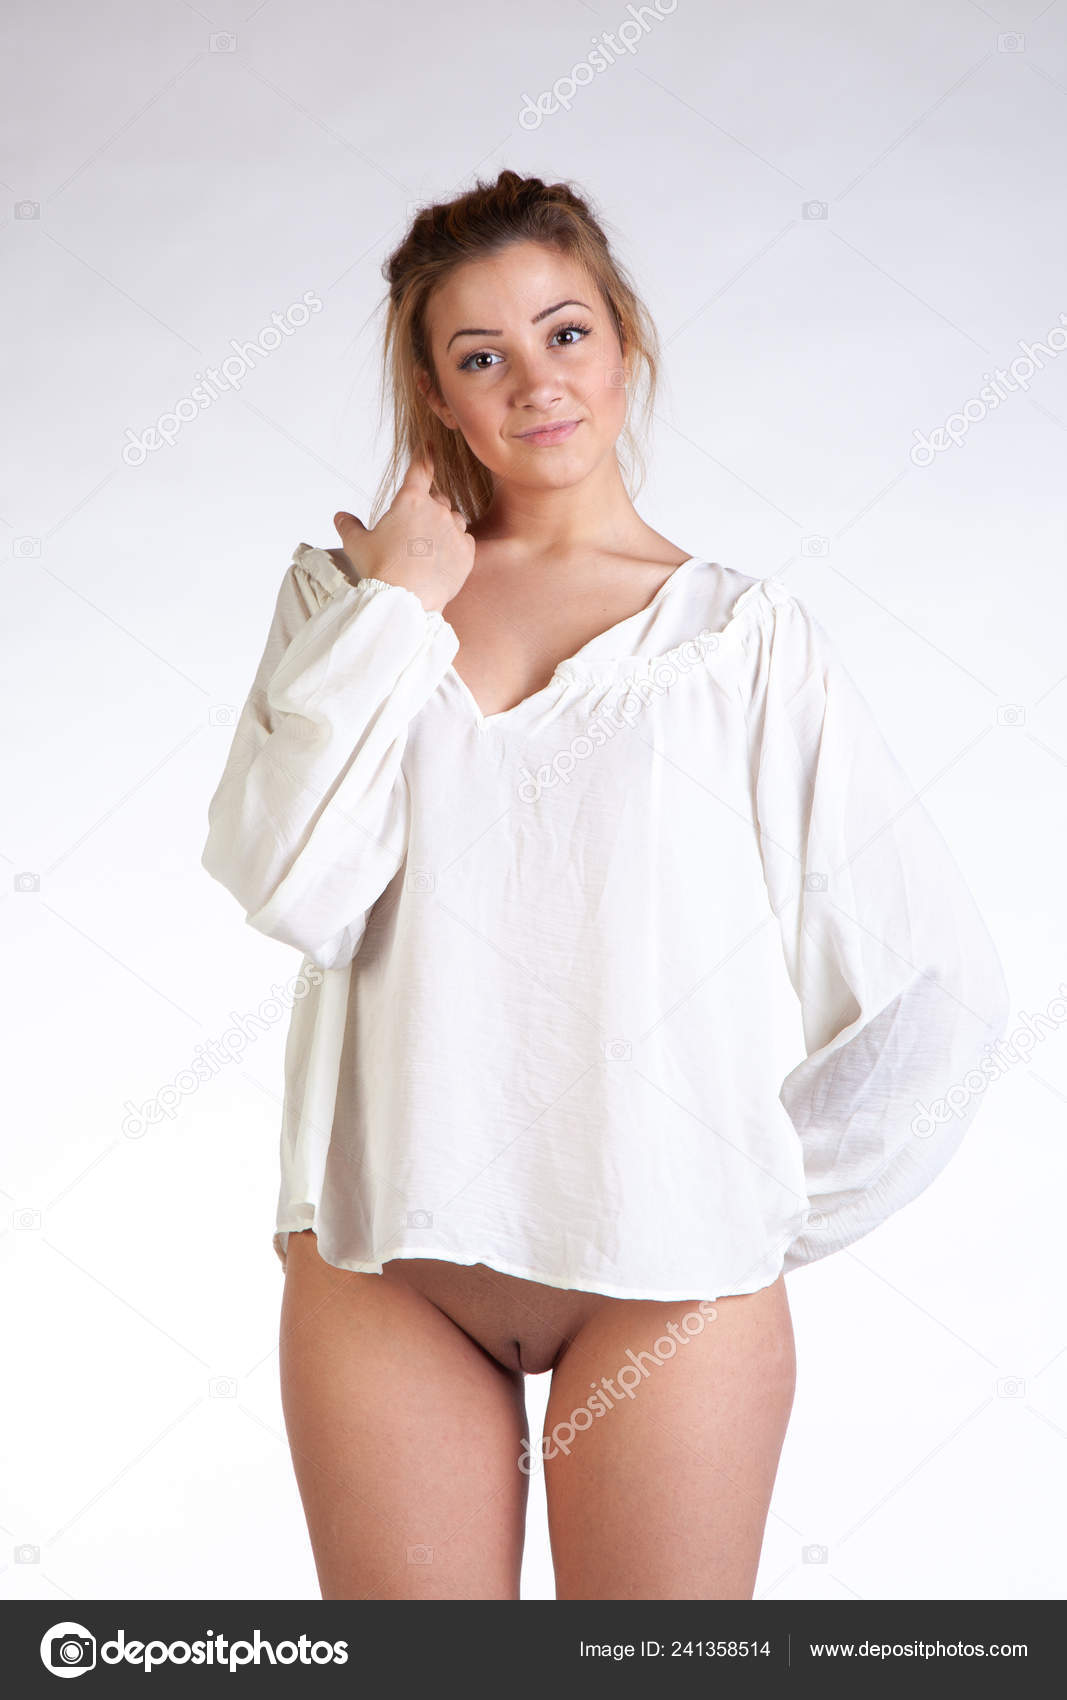 https://st4n.depositphotos.com/10086424/24135/i/1600/depositphotos_241358514-stock-photo-young-beautiful-girl-posing-nude.jpg